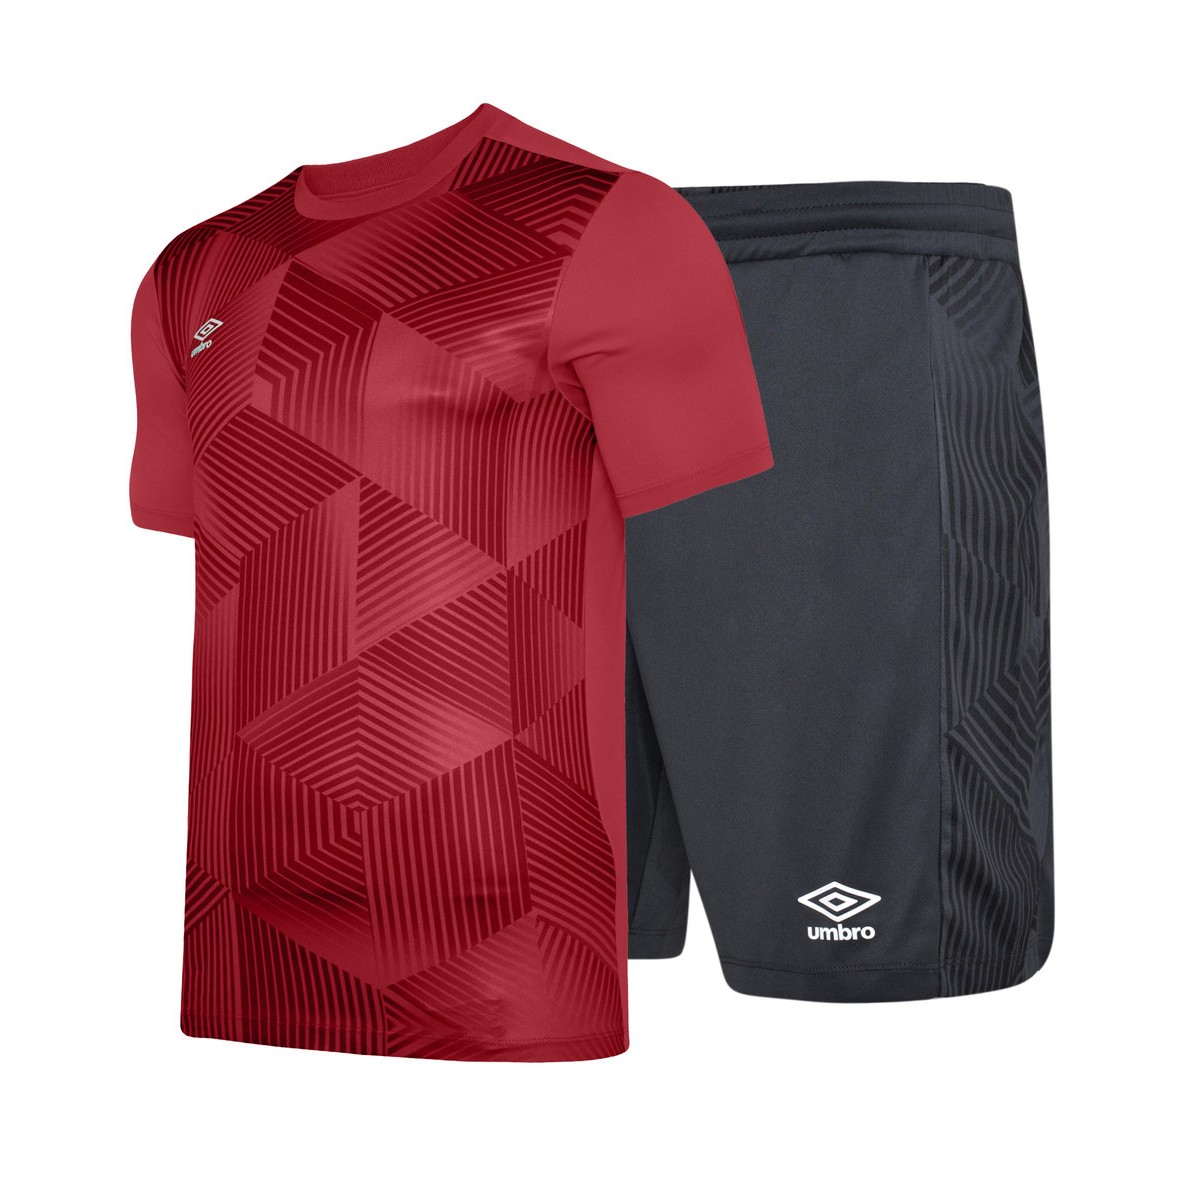 Kit De Fútbol / Umbro Maxium - rojo - 